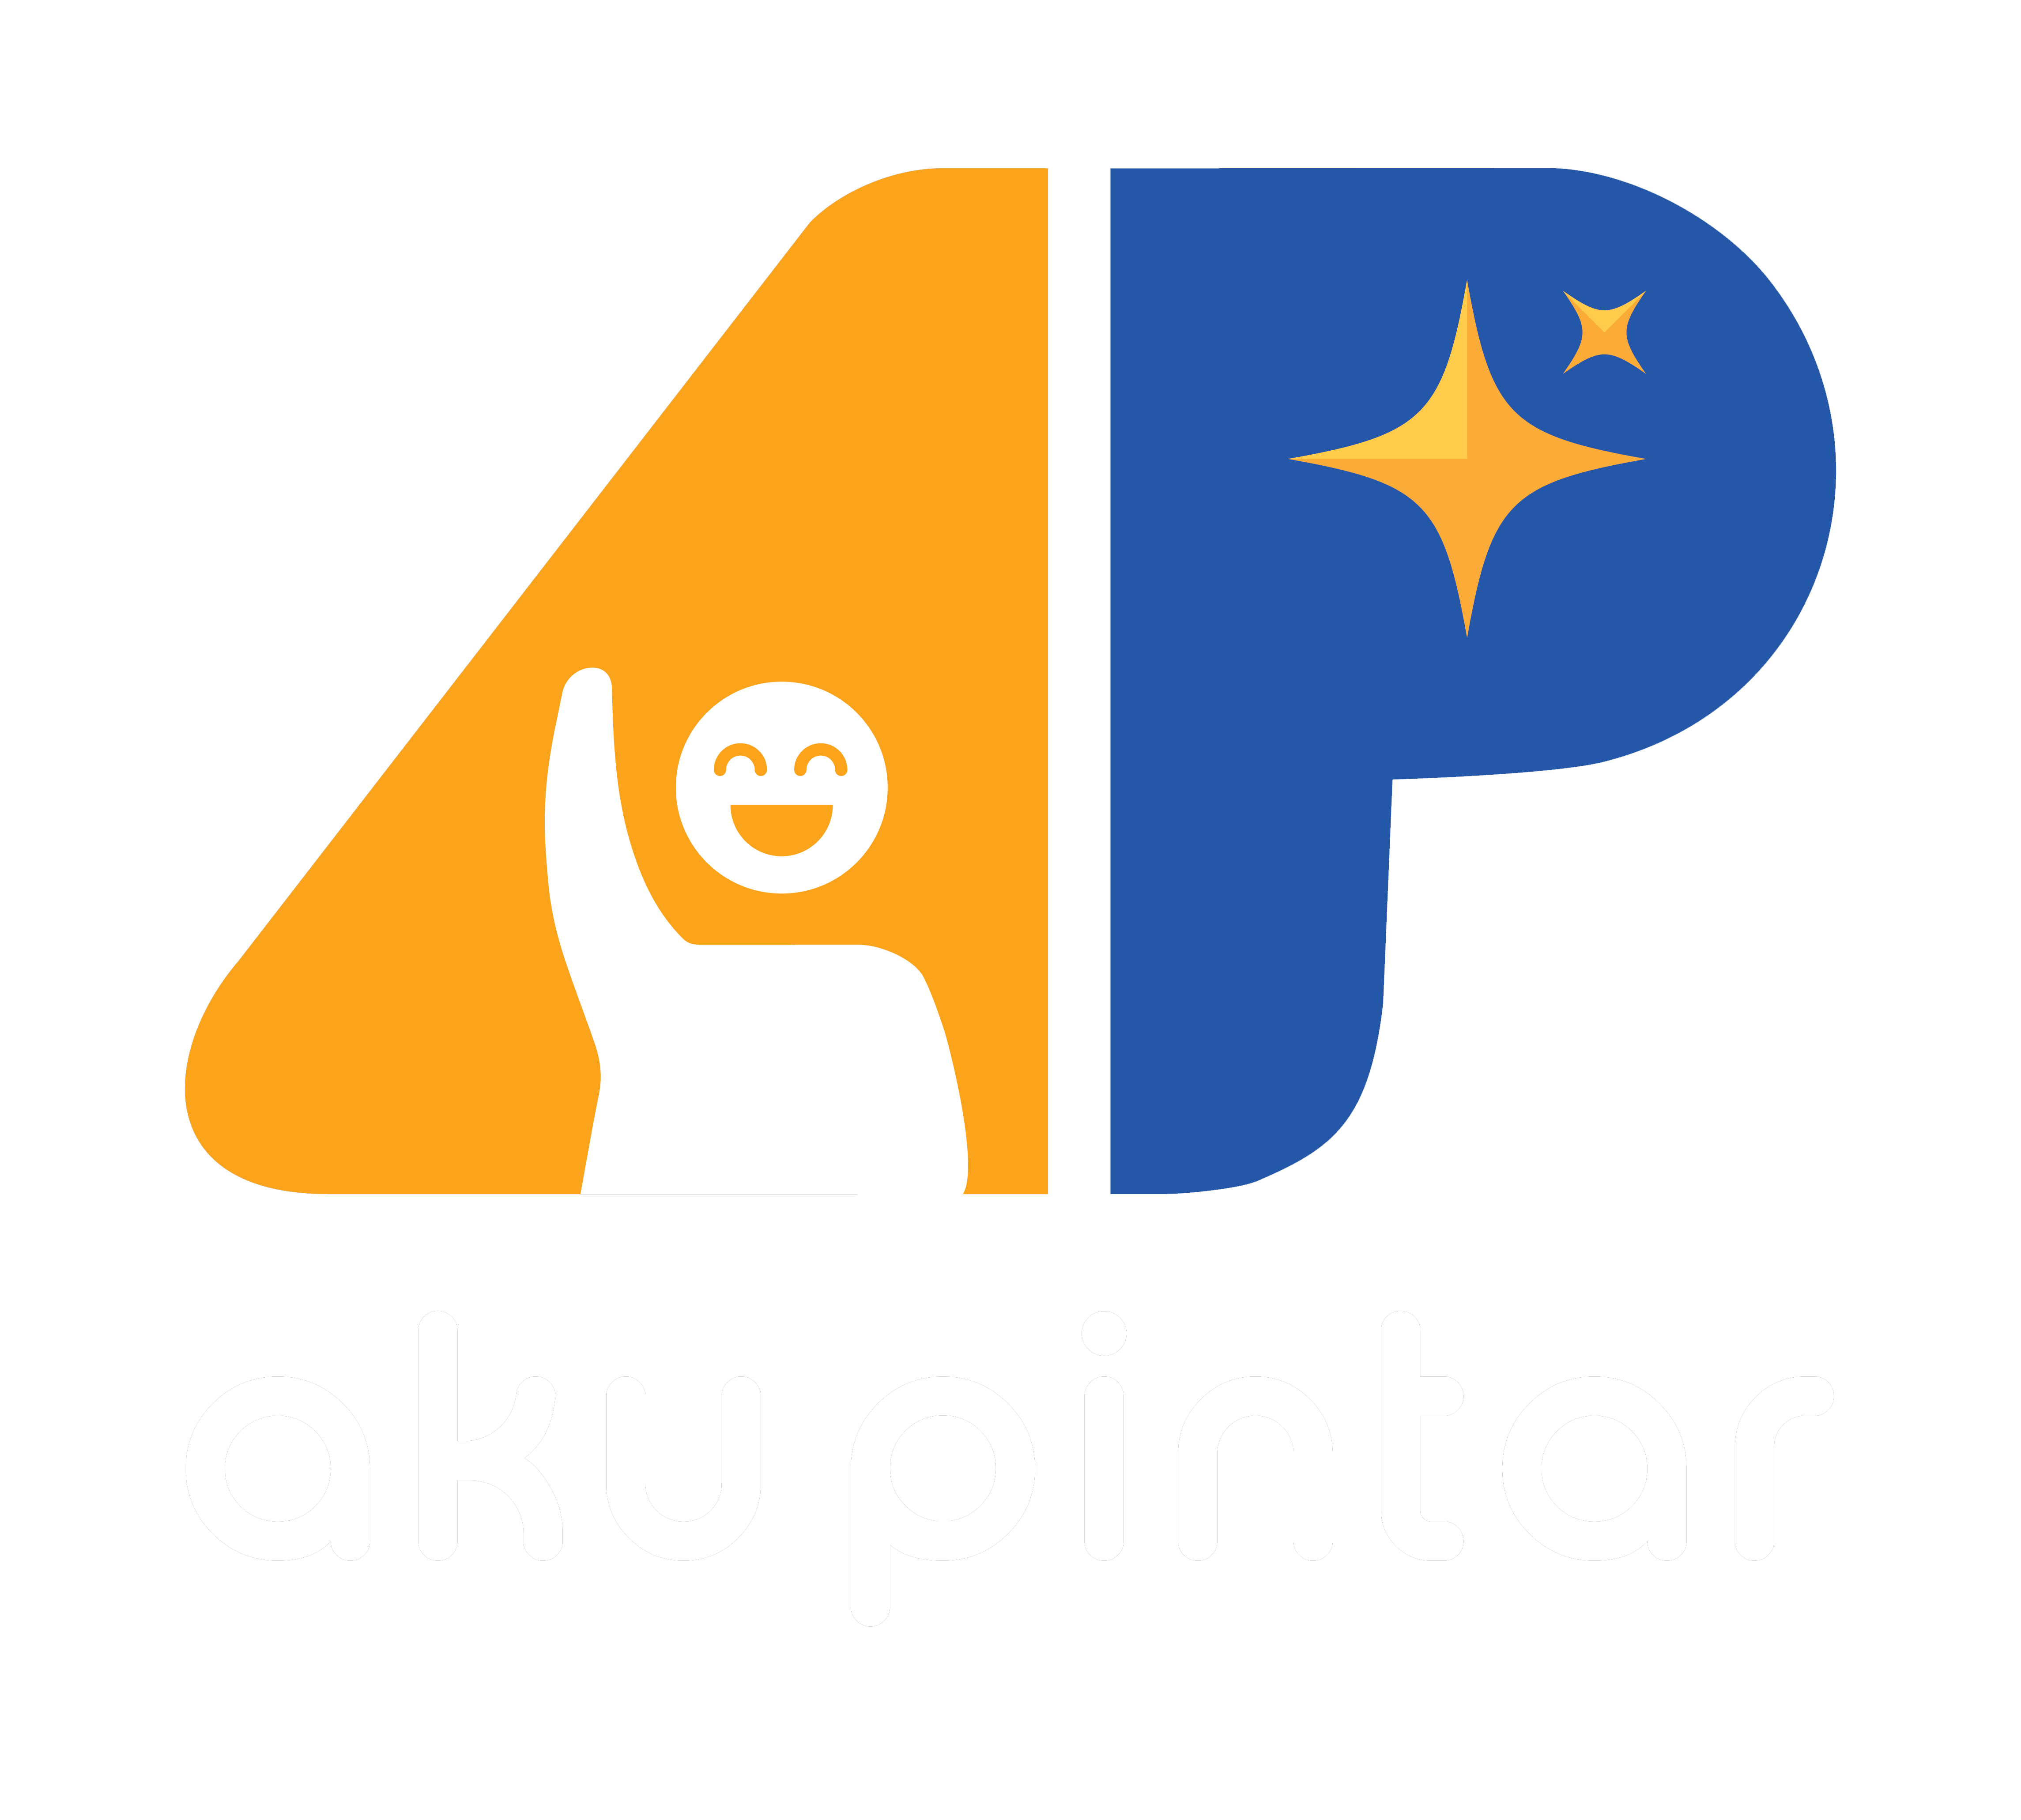 Aku Pintar adalah perusahaan teknologi informasi yang bergerak dibidang pendidikan nama perusahaan kami adalah PT Aku Pintar Indonesia